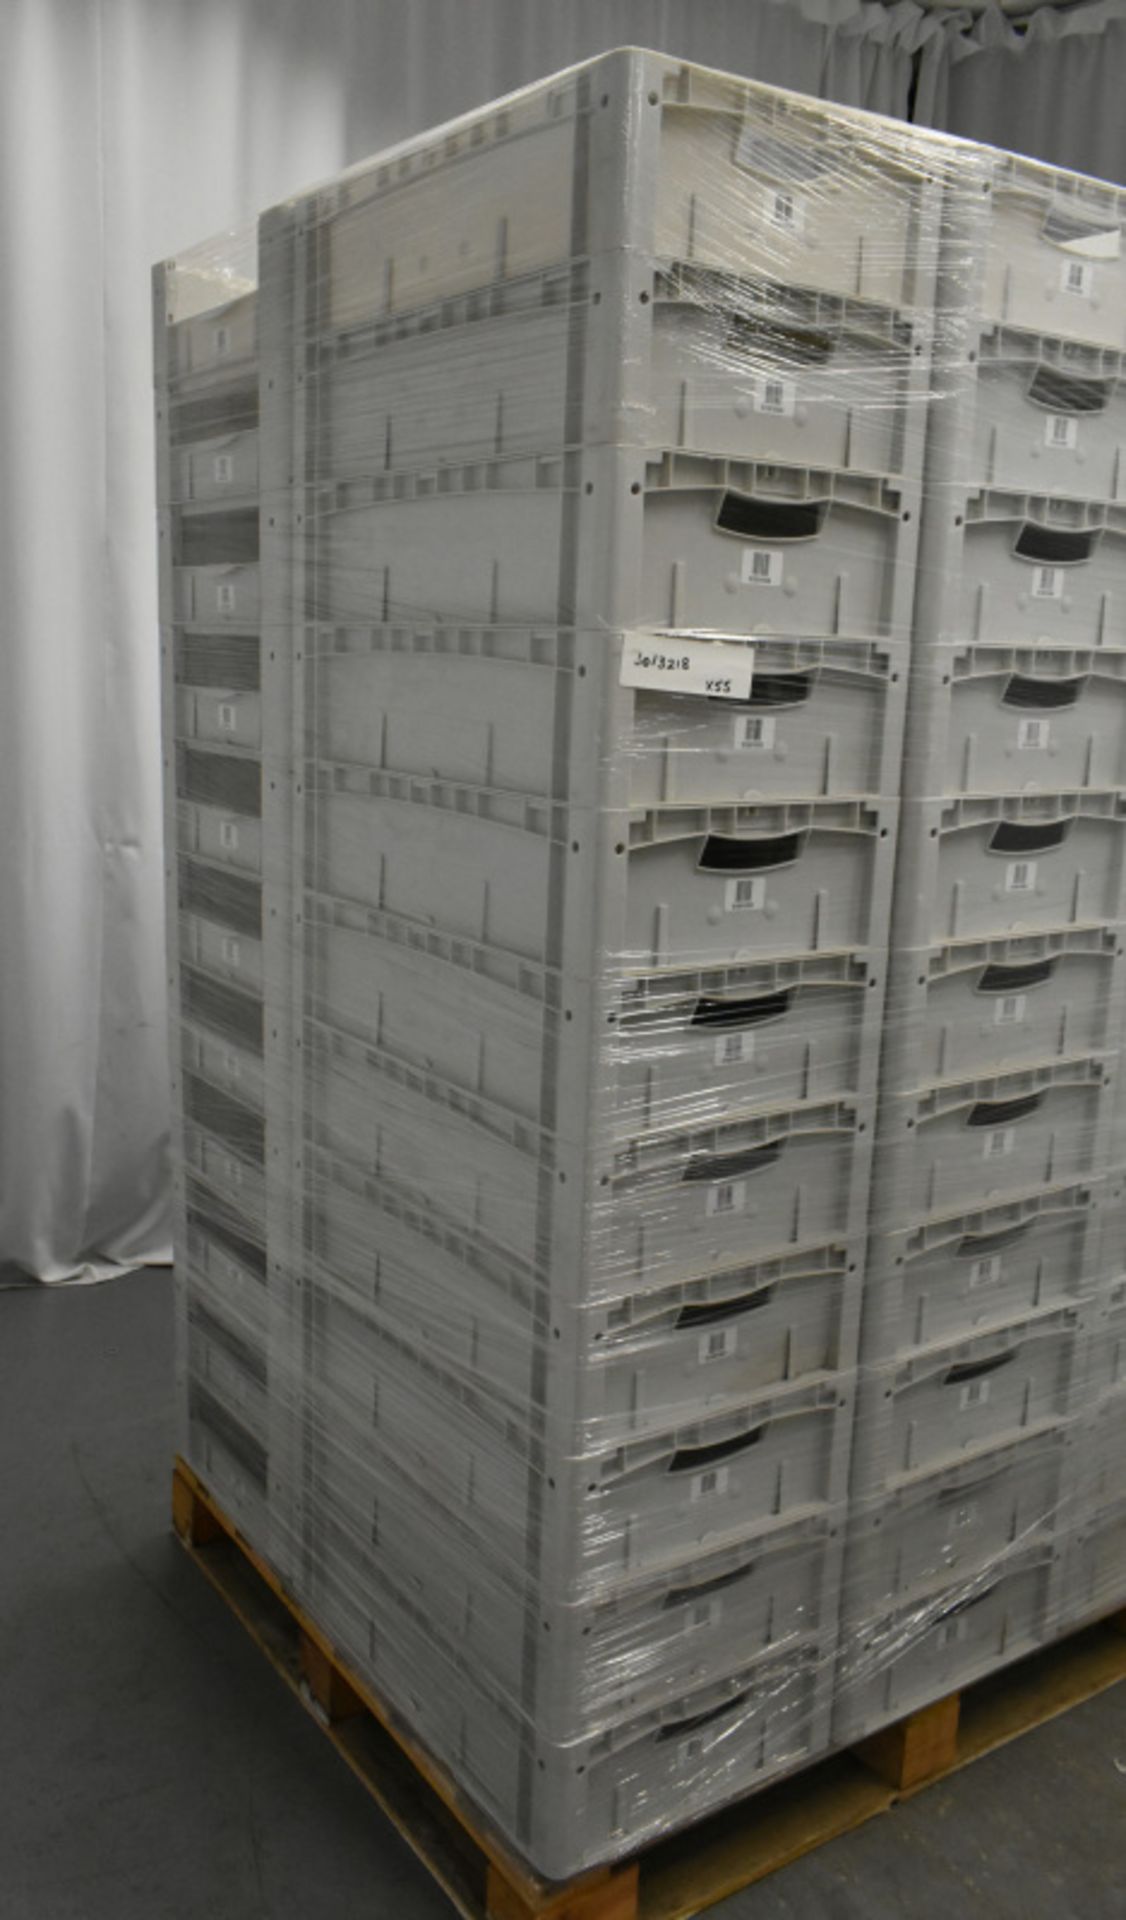 55x Tote Storage Boxes - L600 x W400 x H150mm - Image 4 of 4